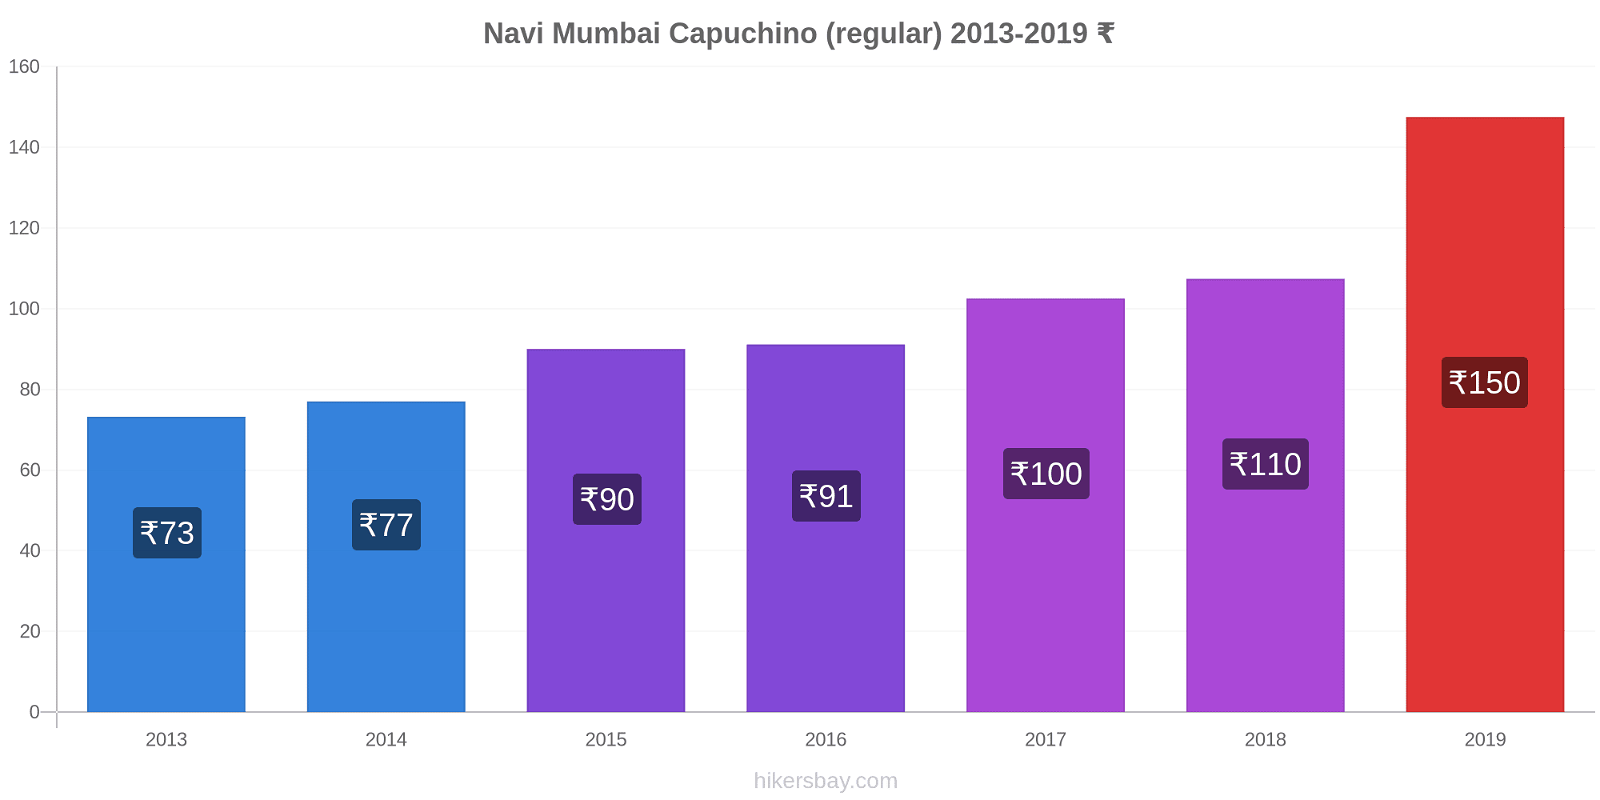 Navi Mumbai cambios de precios Capuchino (regular) hikersbay.com